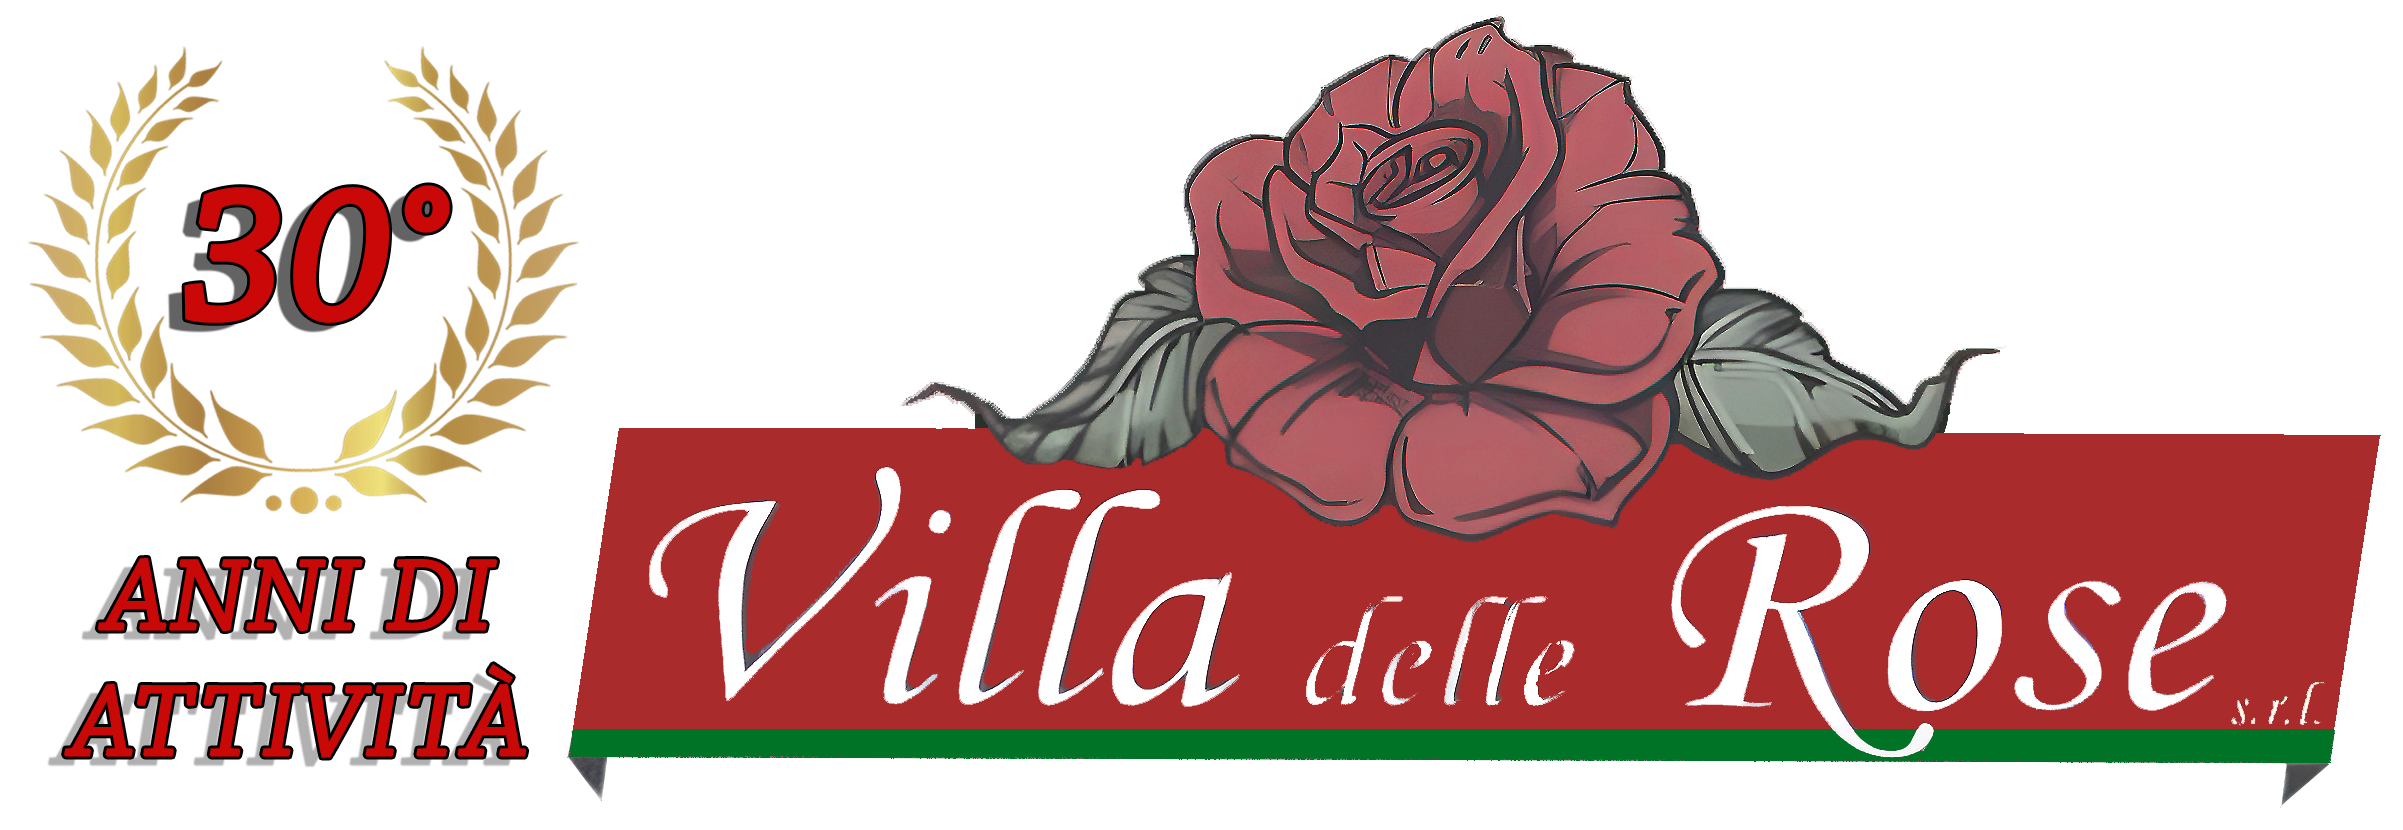 Ristorante-Pizzeria Villa delle rose